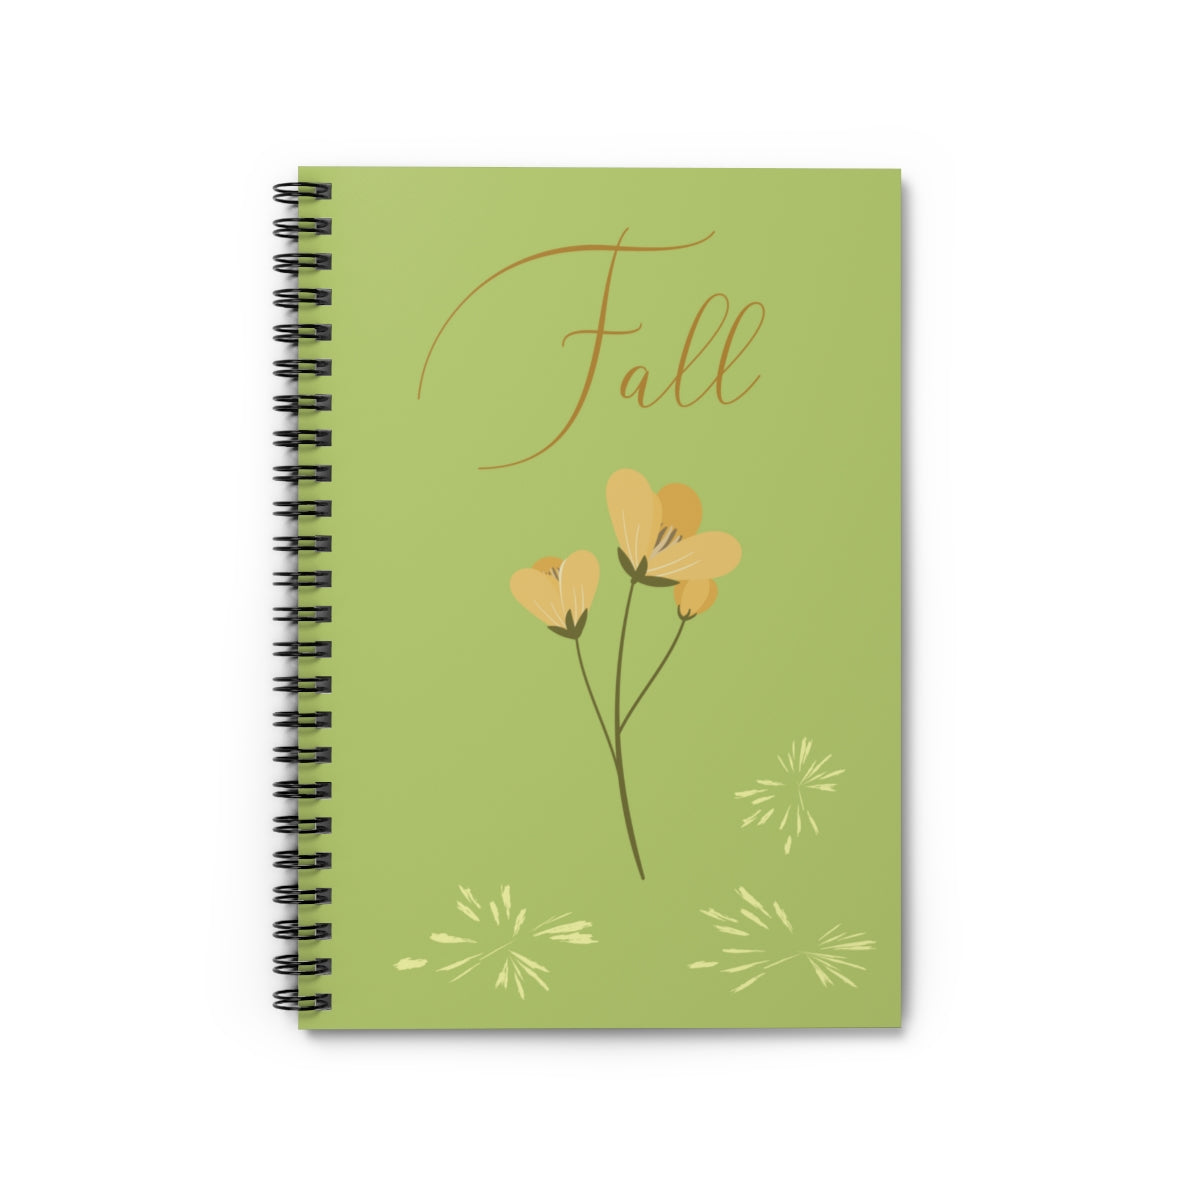 Fall Spiral Notebook